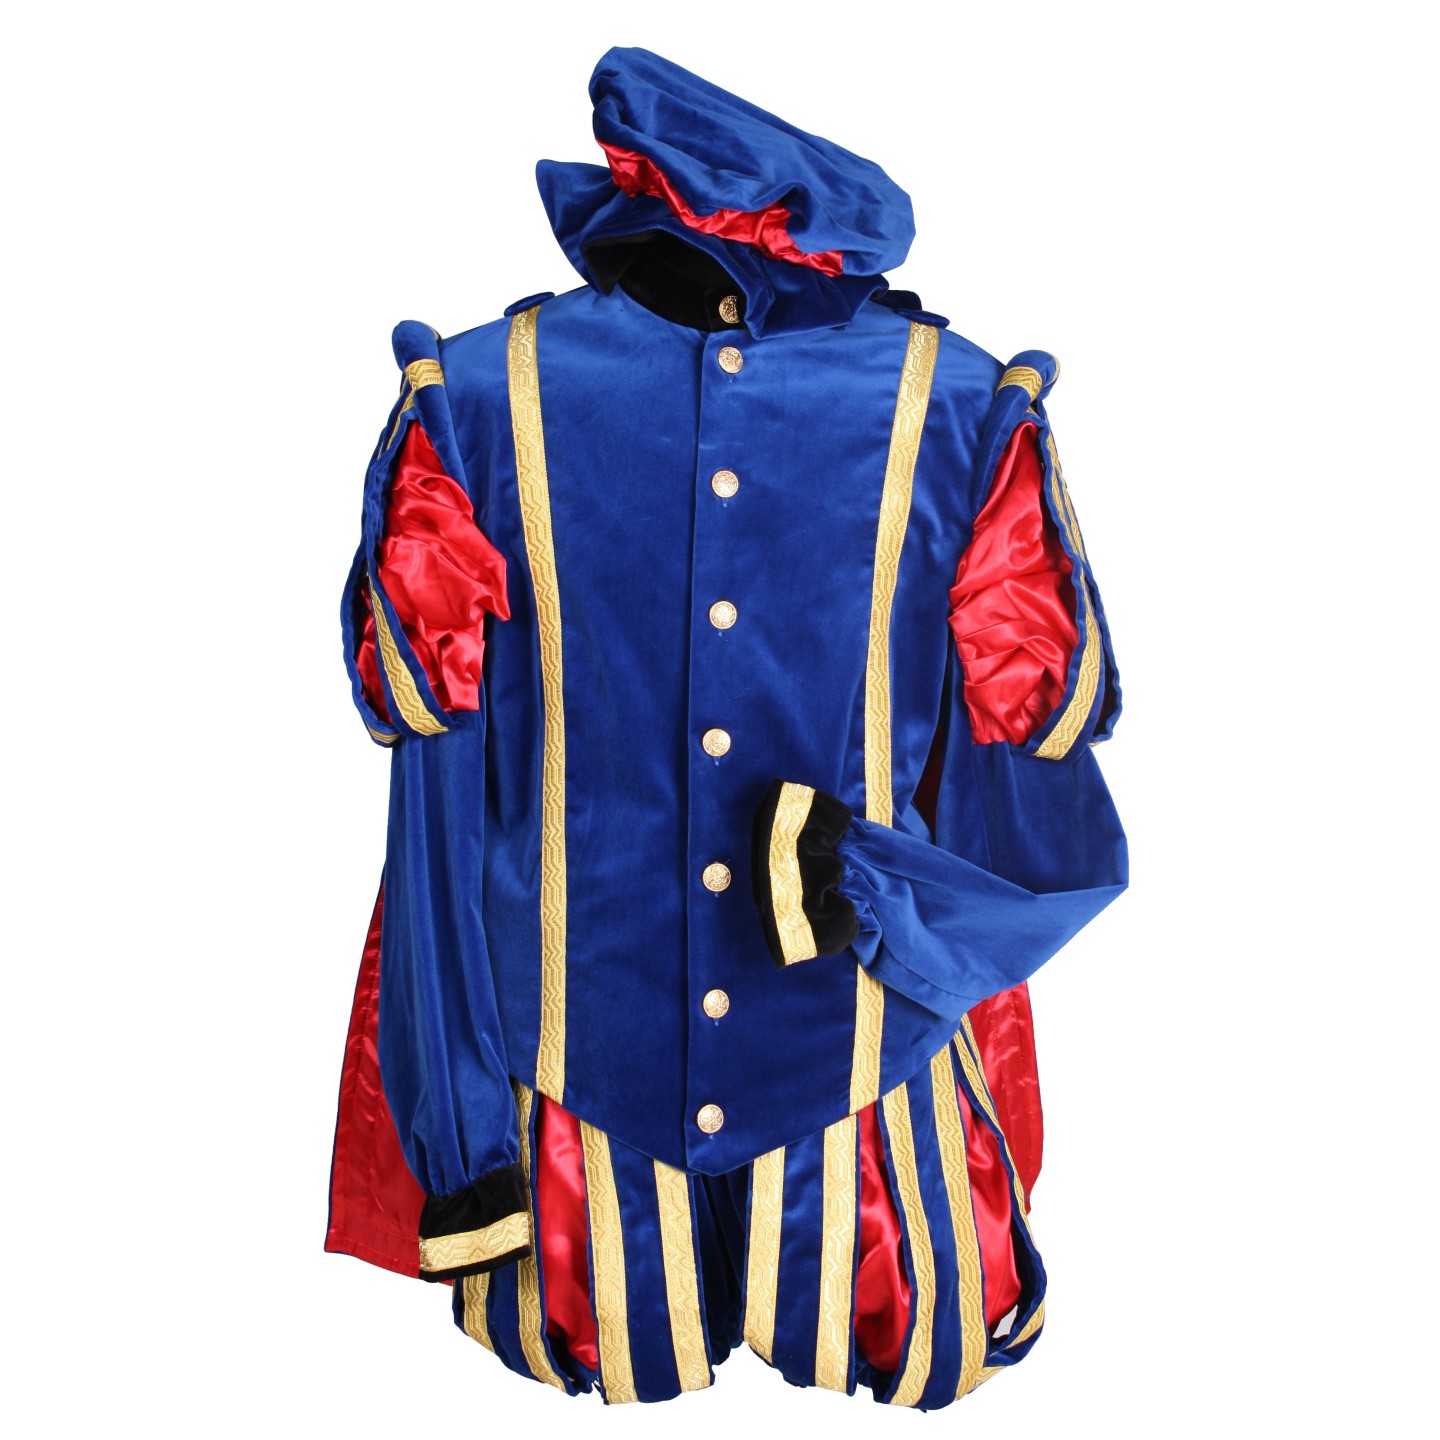 Zwarte Pietenpak kopen | Sinterklaas kleding Jokershop.be